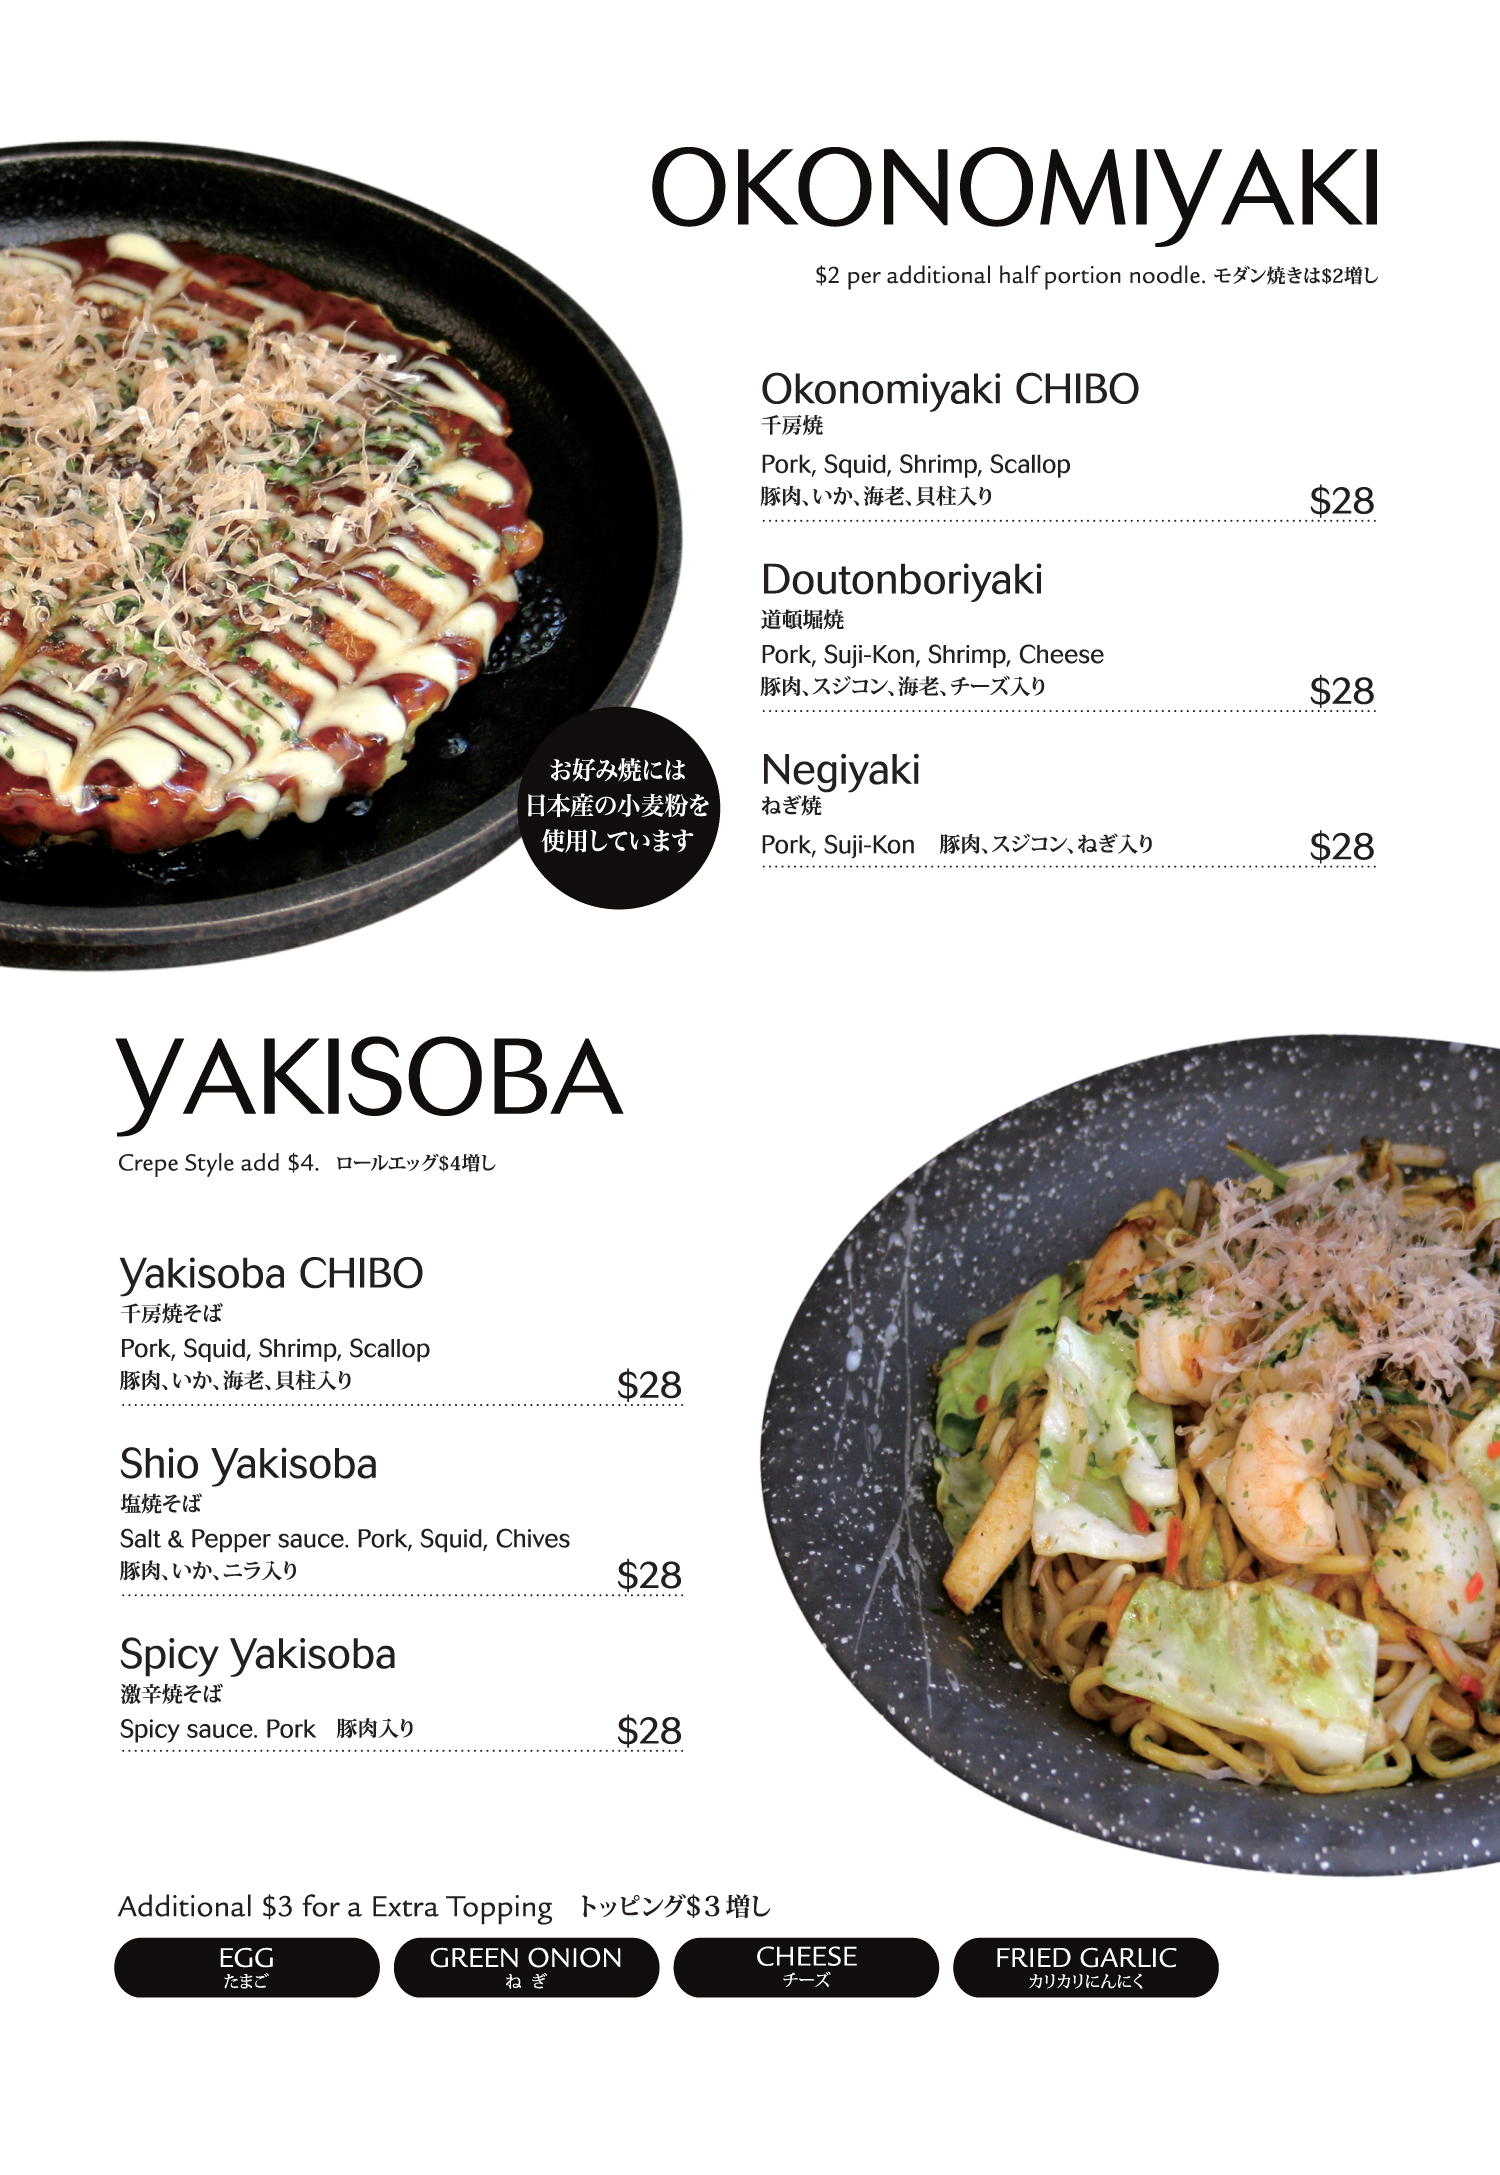 Okonomiyaki & Yakisoba